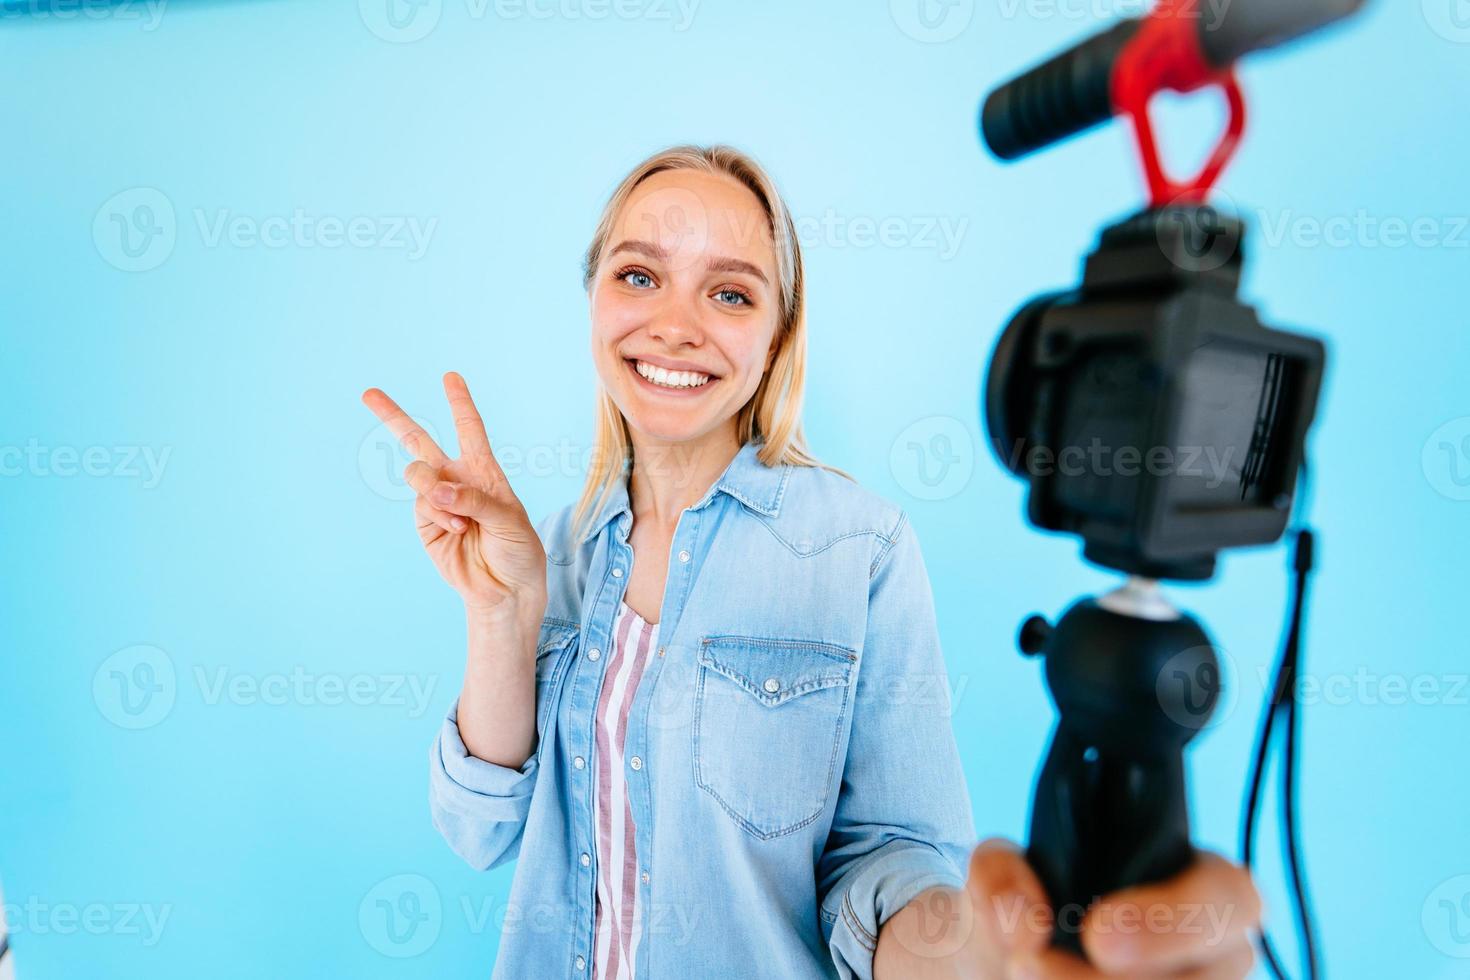 hermosa chica blogger hace sus necesidades en la cámara aislado fondo azul foto